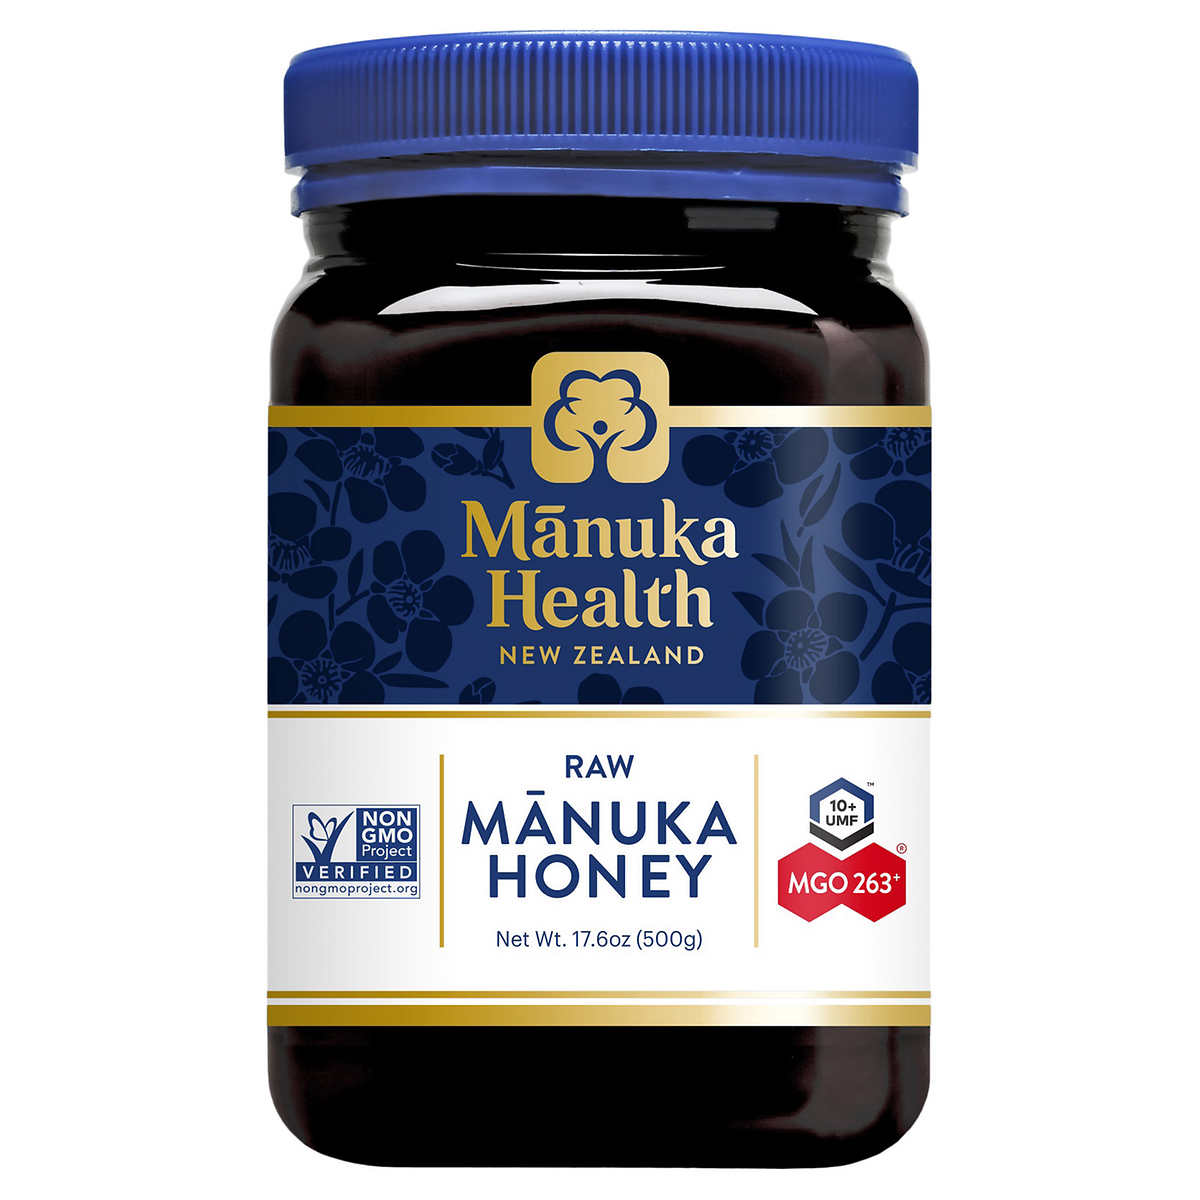 Manuka Health UMF 10+ (MGO 263+) Raw Manuka Honey 17.6 oz